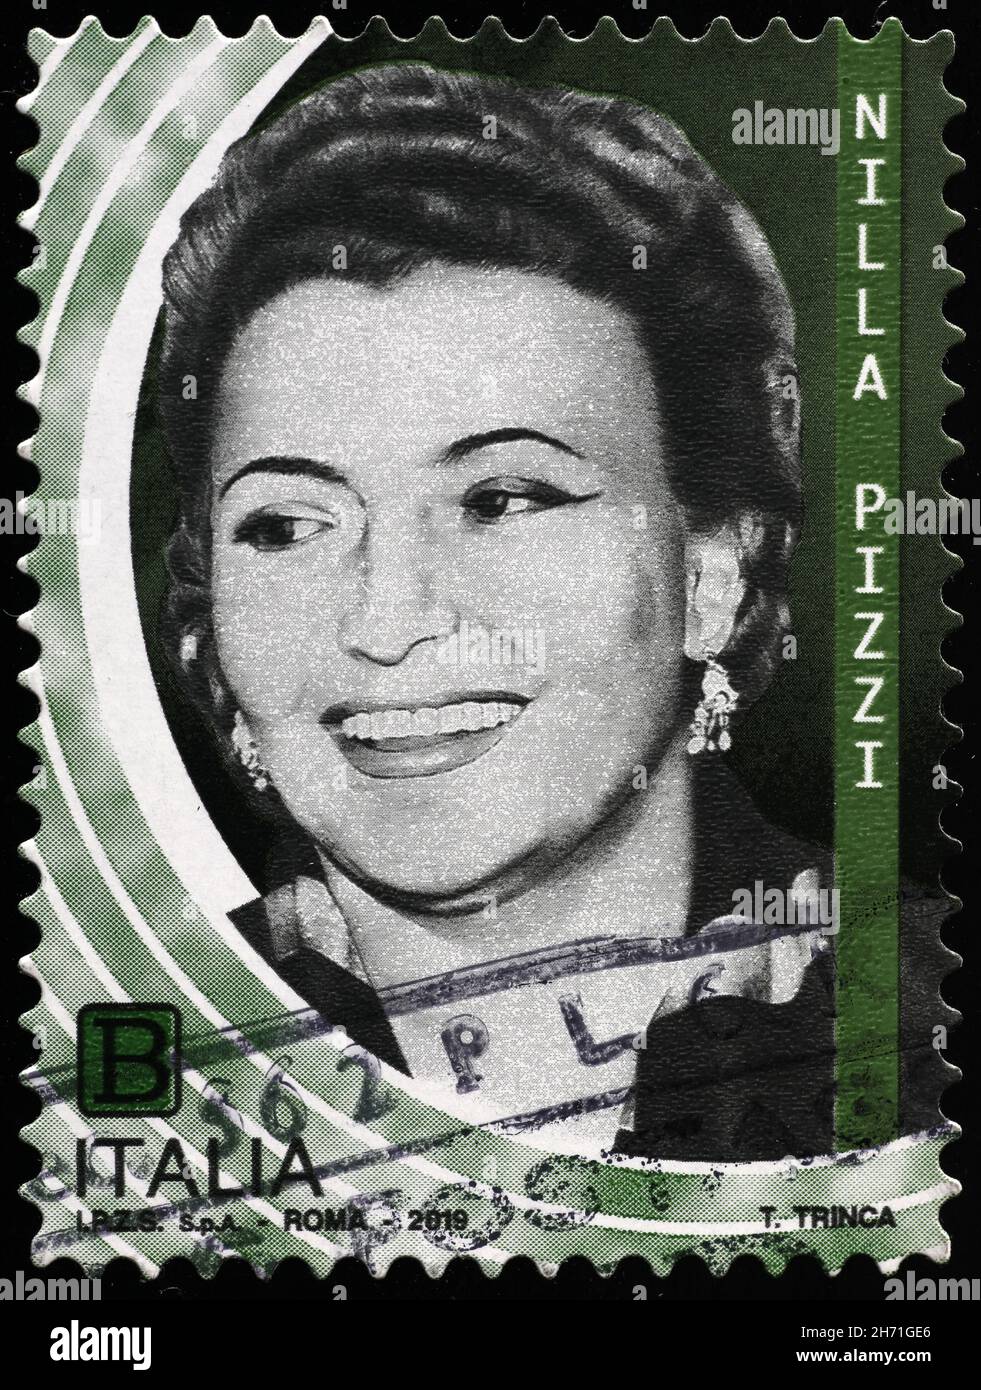 Nilla Pizzi sobre sello postal italiano Foto de stock